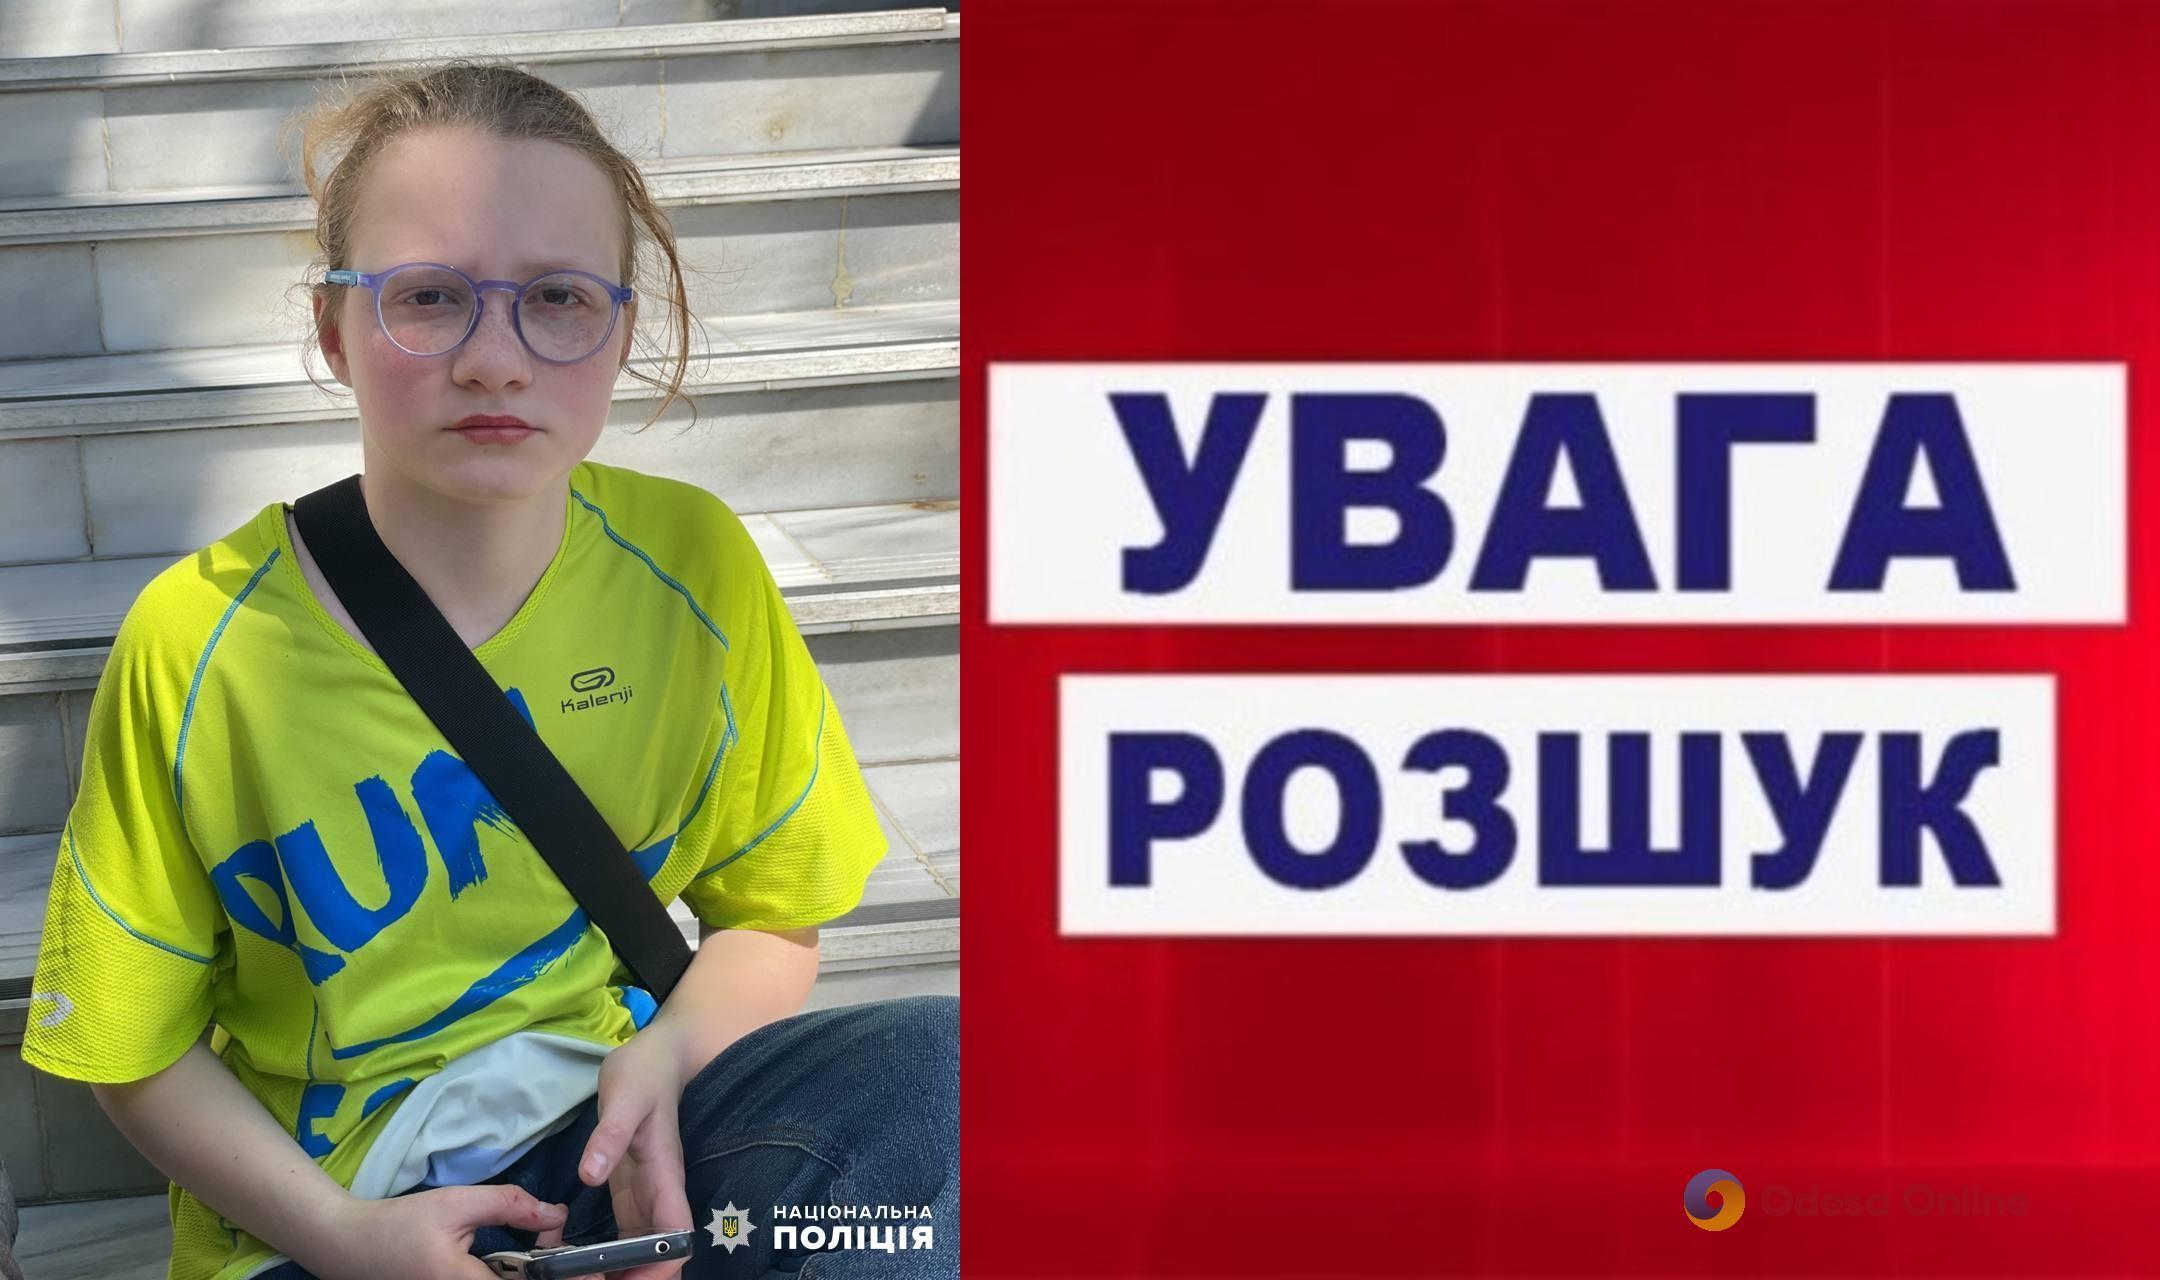 В Одессе ищут пропавшую 13-летнюю девочку (обновлено)